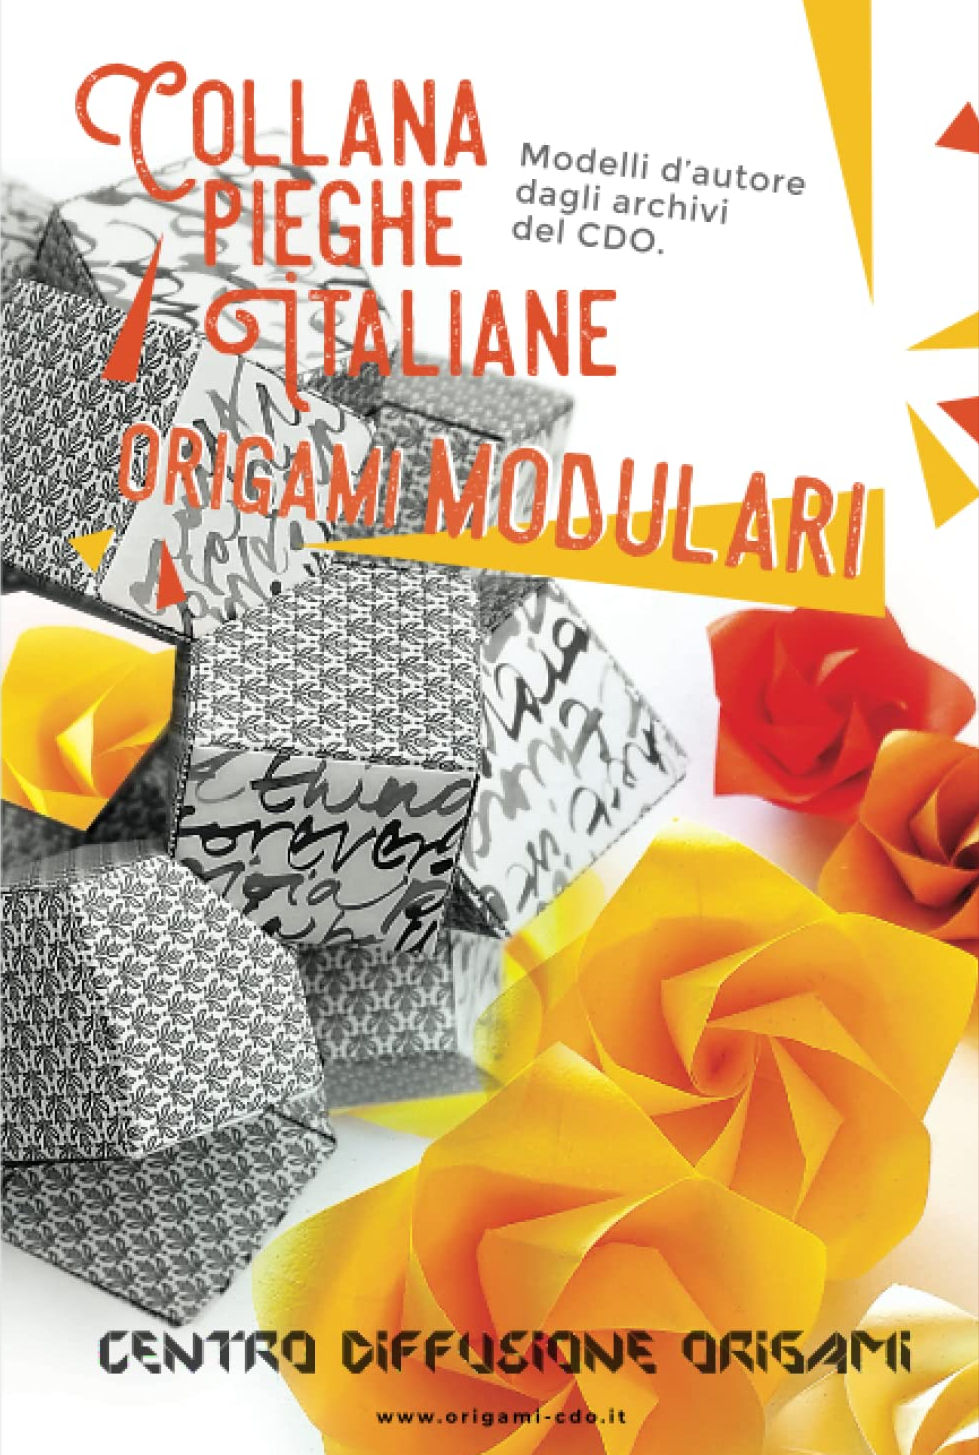 Collana pieghe Italiane - origami MODULARI : page 52.